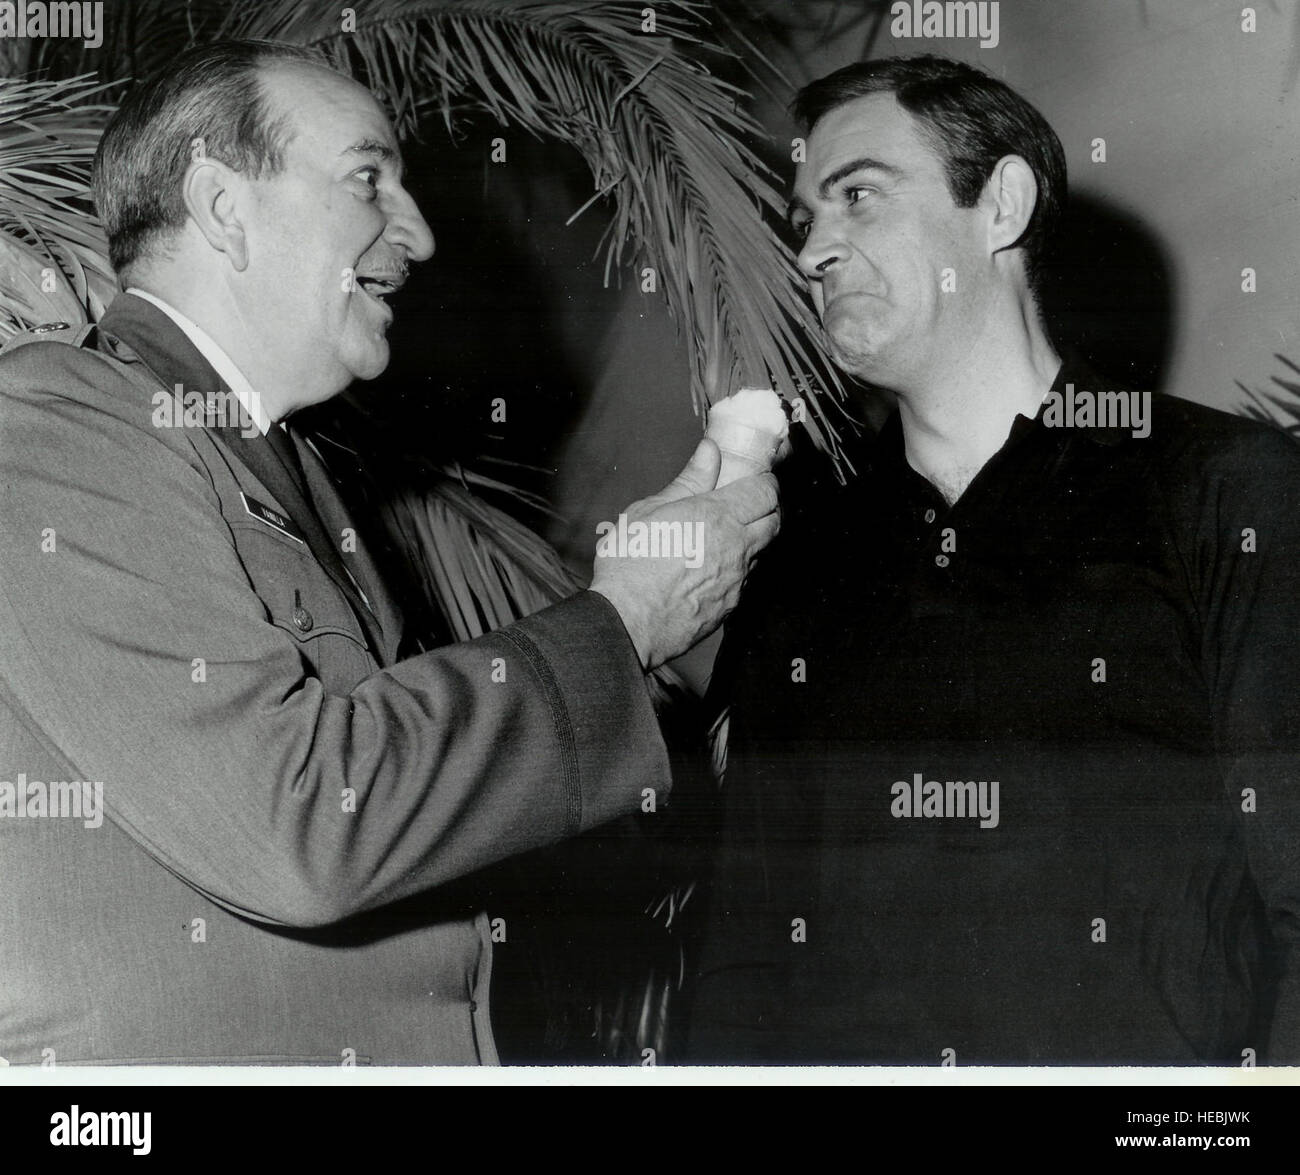 Sean Connery feint d'enfoncer un cornet de crème glacée à la vanille dans le Lieutenant-colonel à la retraite Charles Russhon's face au cours de la production de "Thunderball.' Russhon était le conseiller militaire du films de James Bond dans les années 60 et 70. Russhon et Connery devenus amis sur le plateau. Le Vanilla Ice cream cone avait une signification spéciale pour Russhon, qui a inspiré le personnage de Charlie 'Vanilla', une glace aimer mister fix-it, en ami et estimé du caricaturiste américain Milton Caniff bande dessinée 'Steve Canyon.' (Photo gracieuseté de Christian Russhon) Banque D'Images